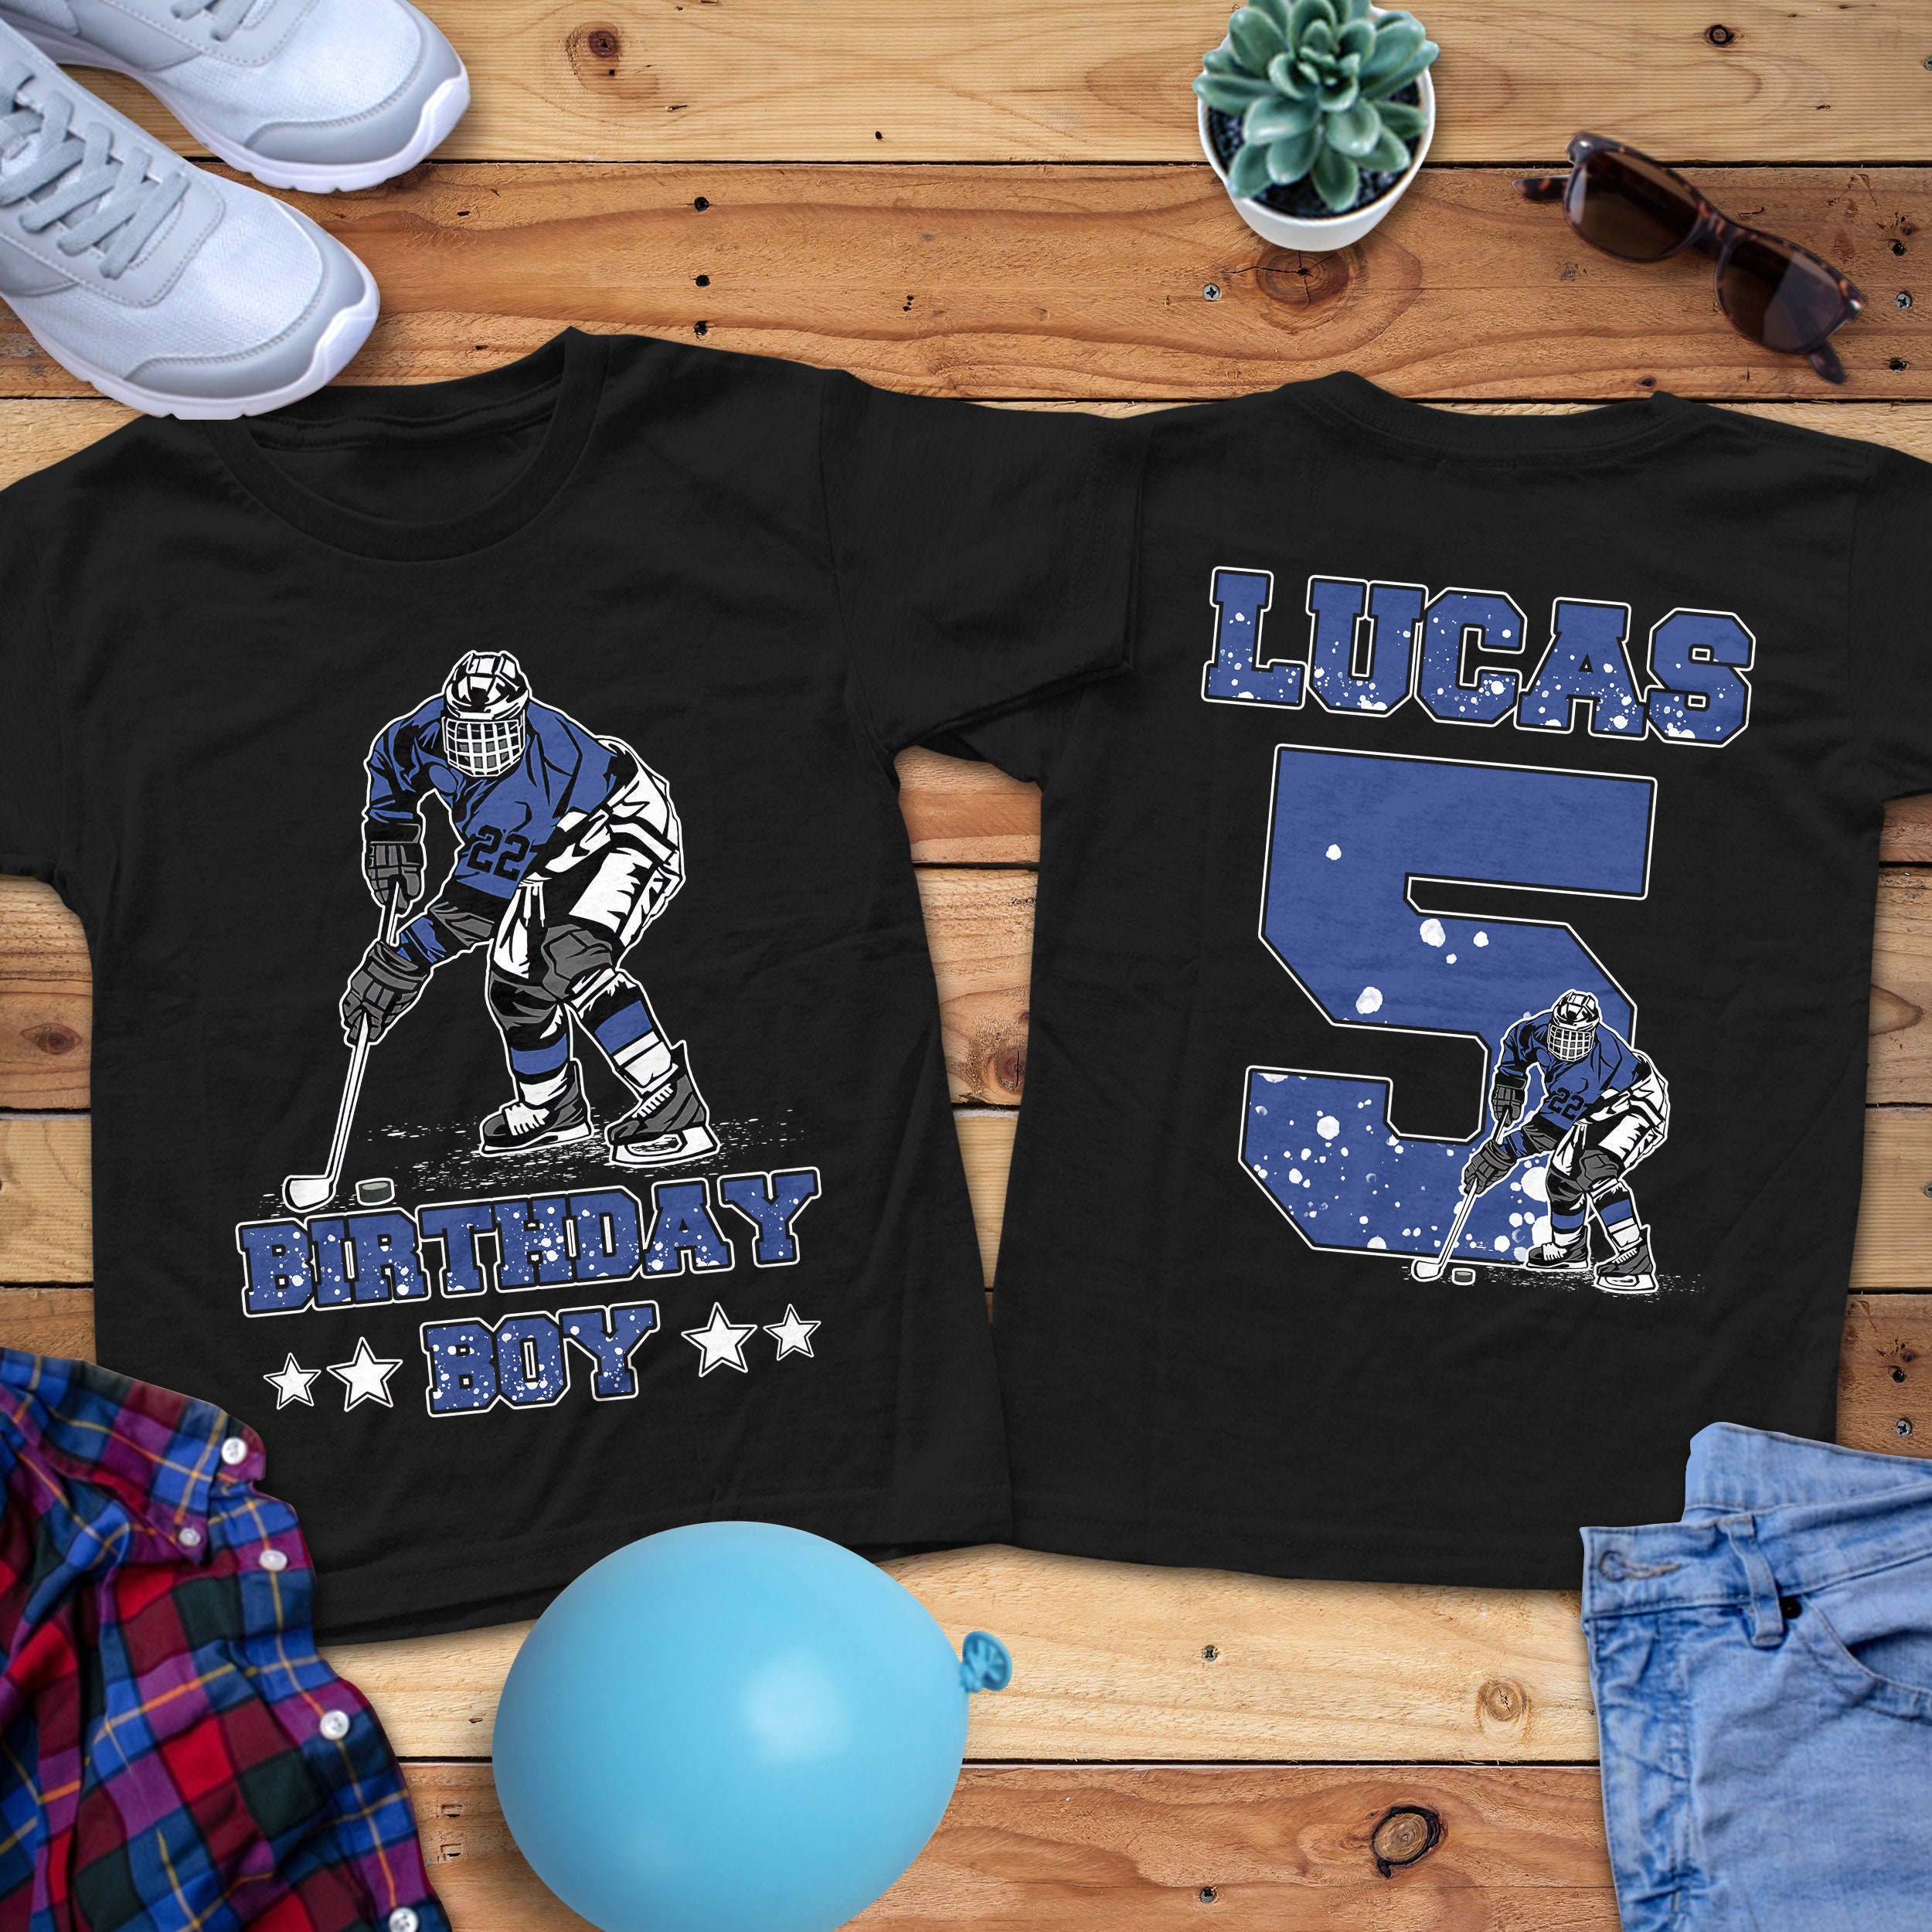 Hockey Party T-shirts, Hockey Team T-shirts, Custom Hockey Party T